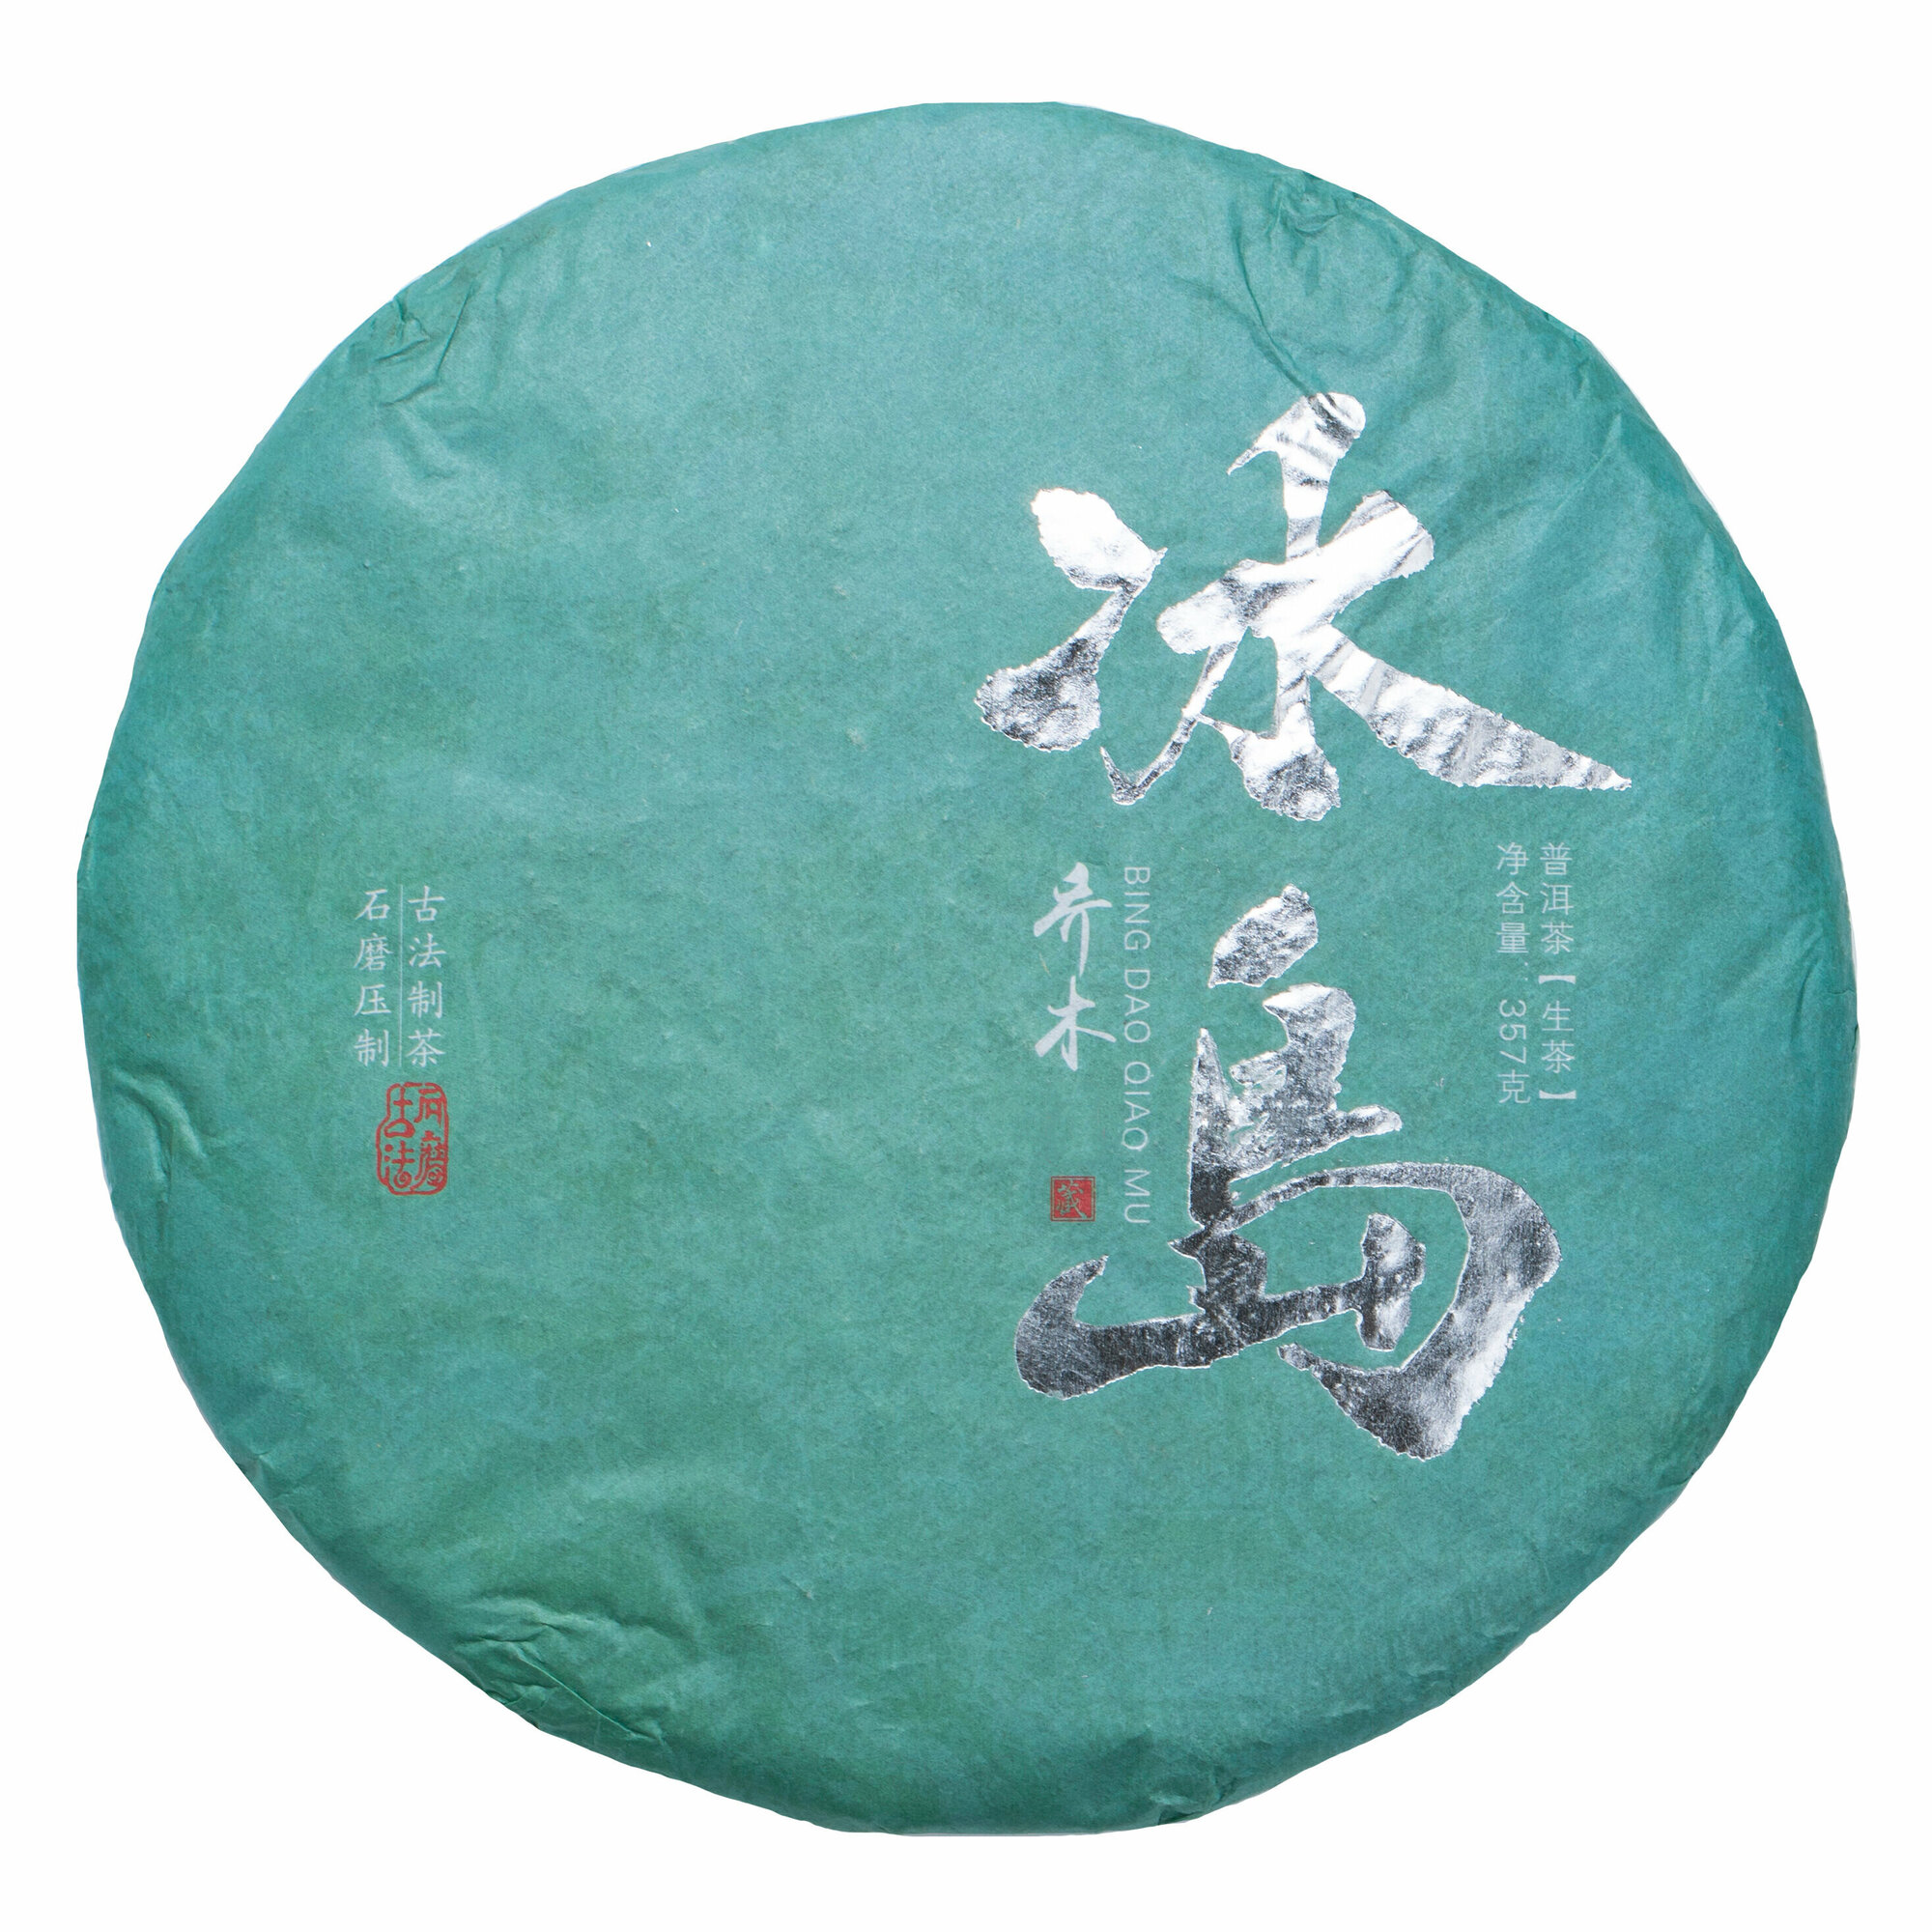 Пуэр Шен Биндао (Китайский прессованный чай) от Подари чай, 315-357 г - фотография № 1